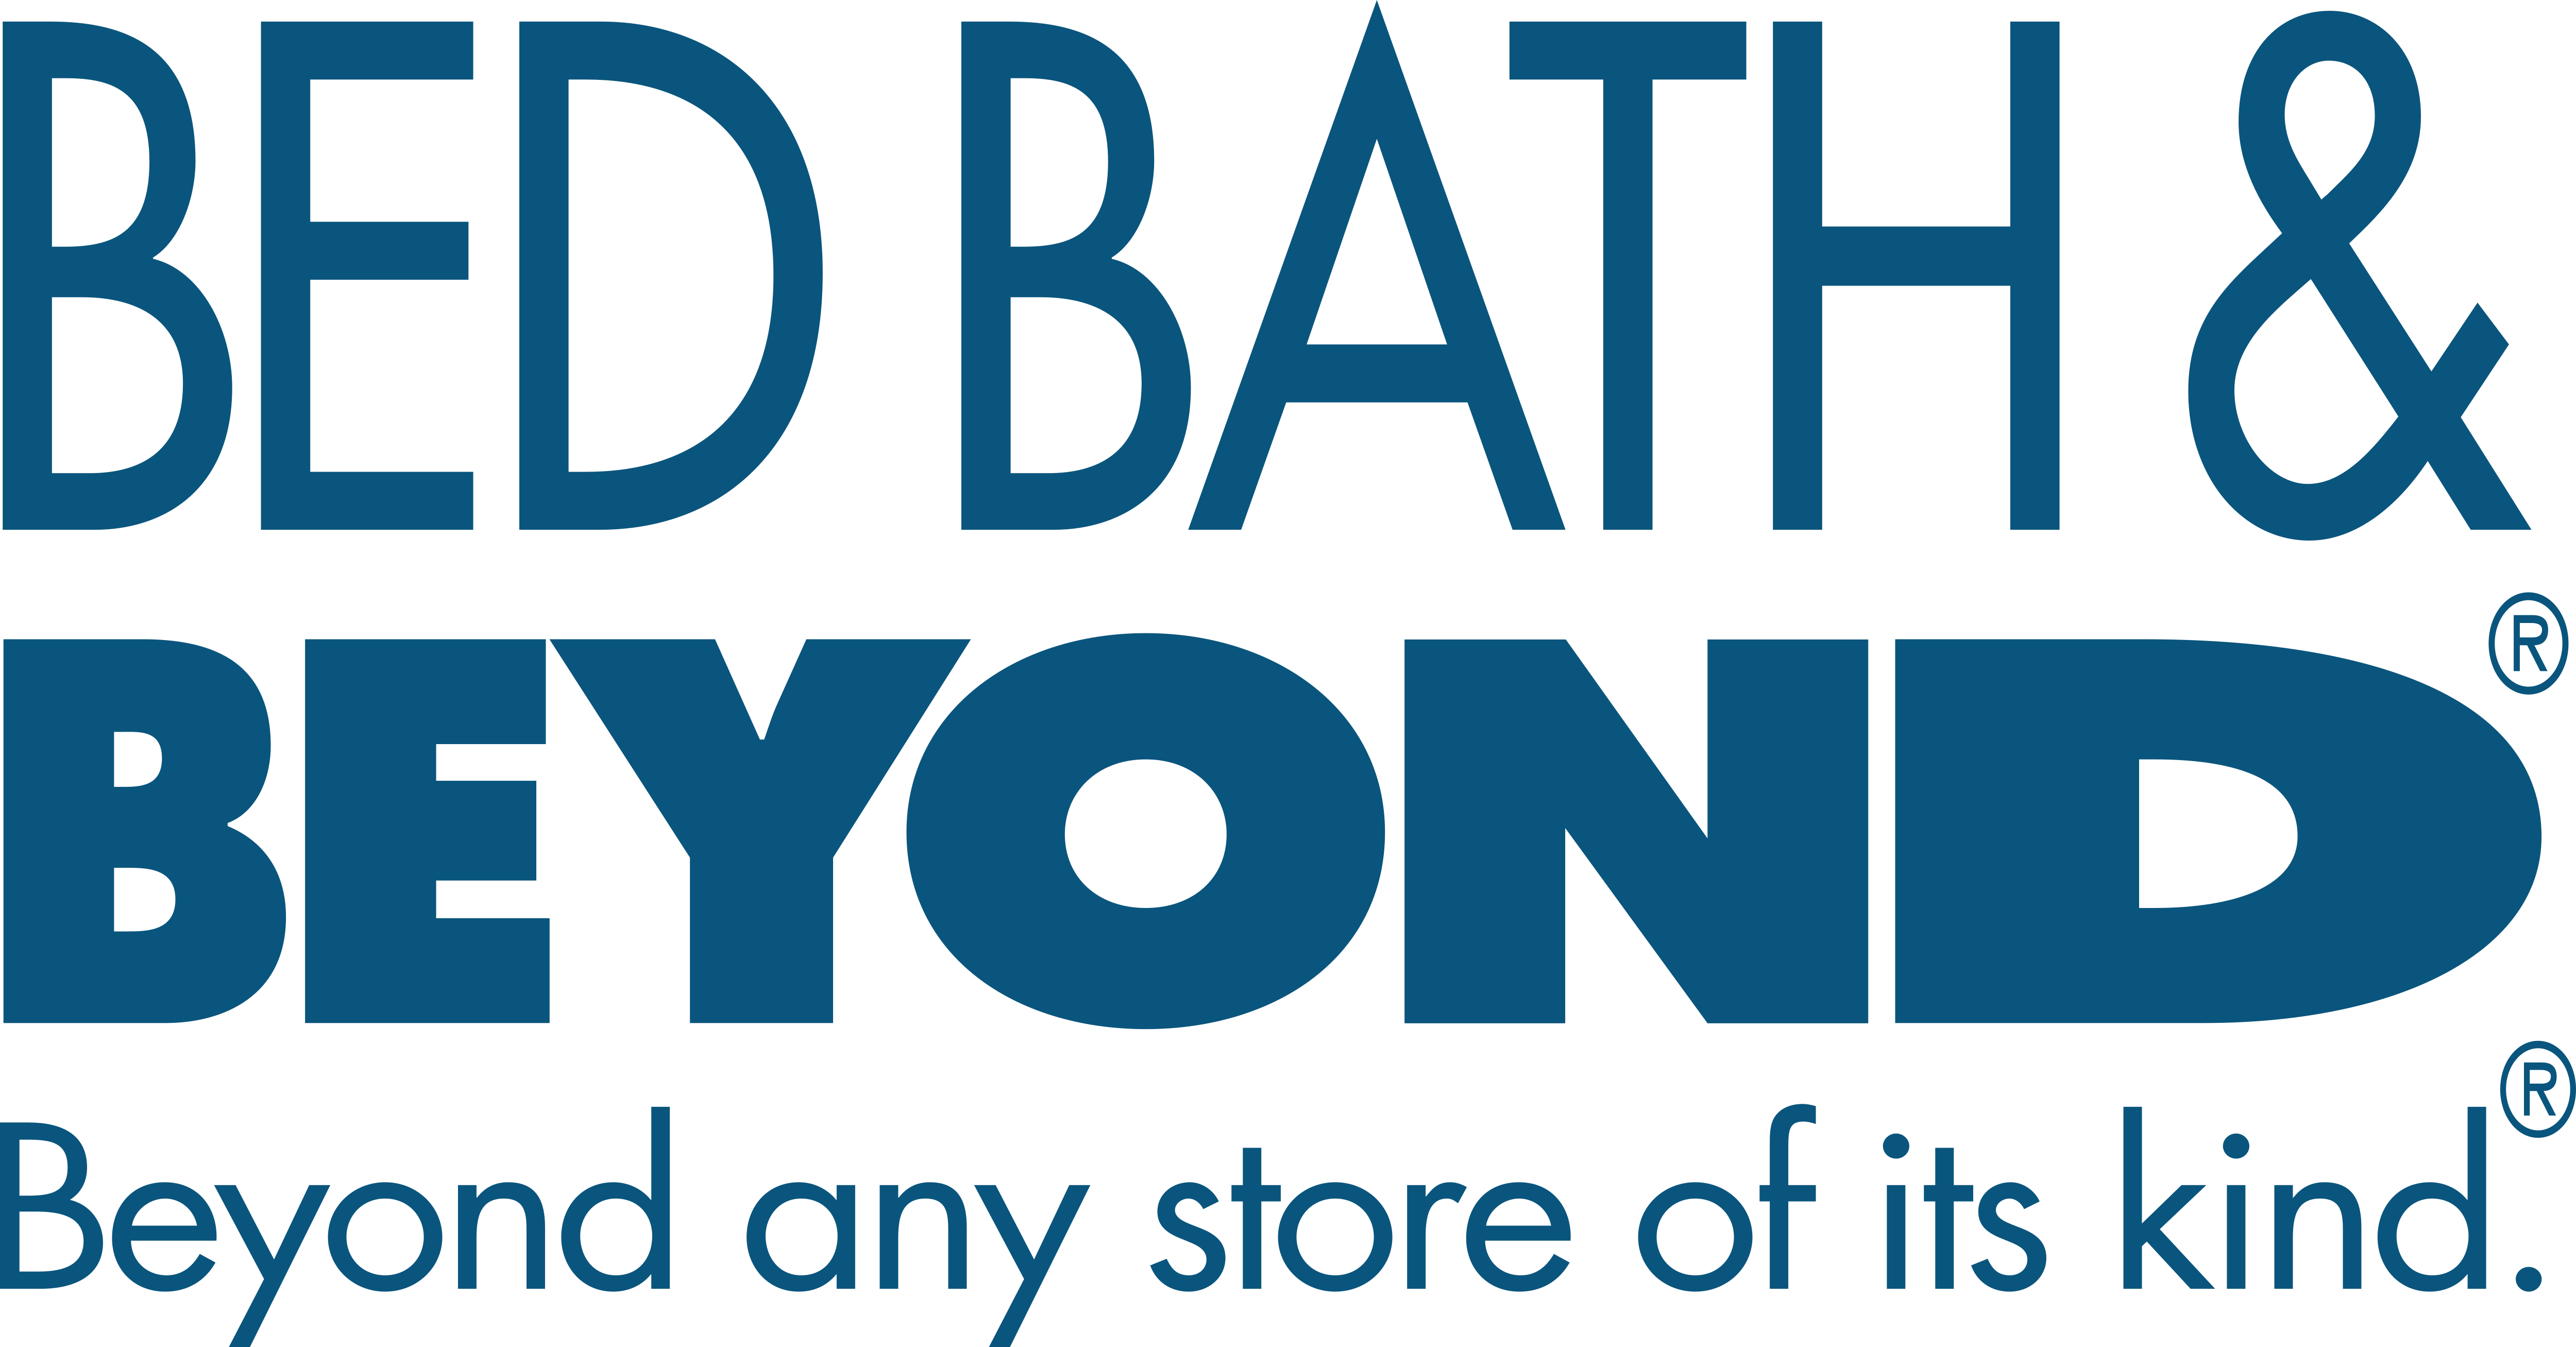 Bed Bath & Beyond.